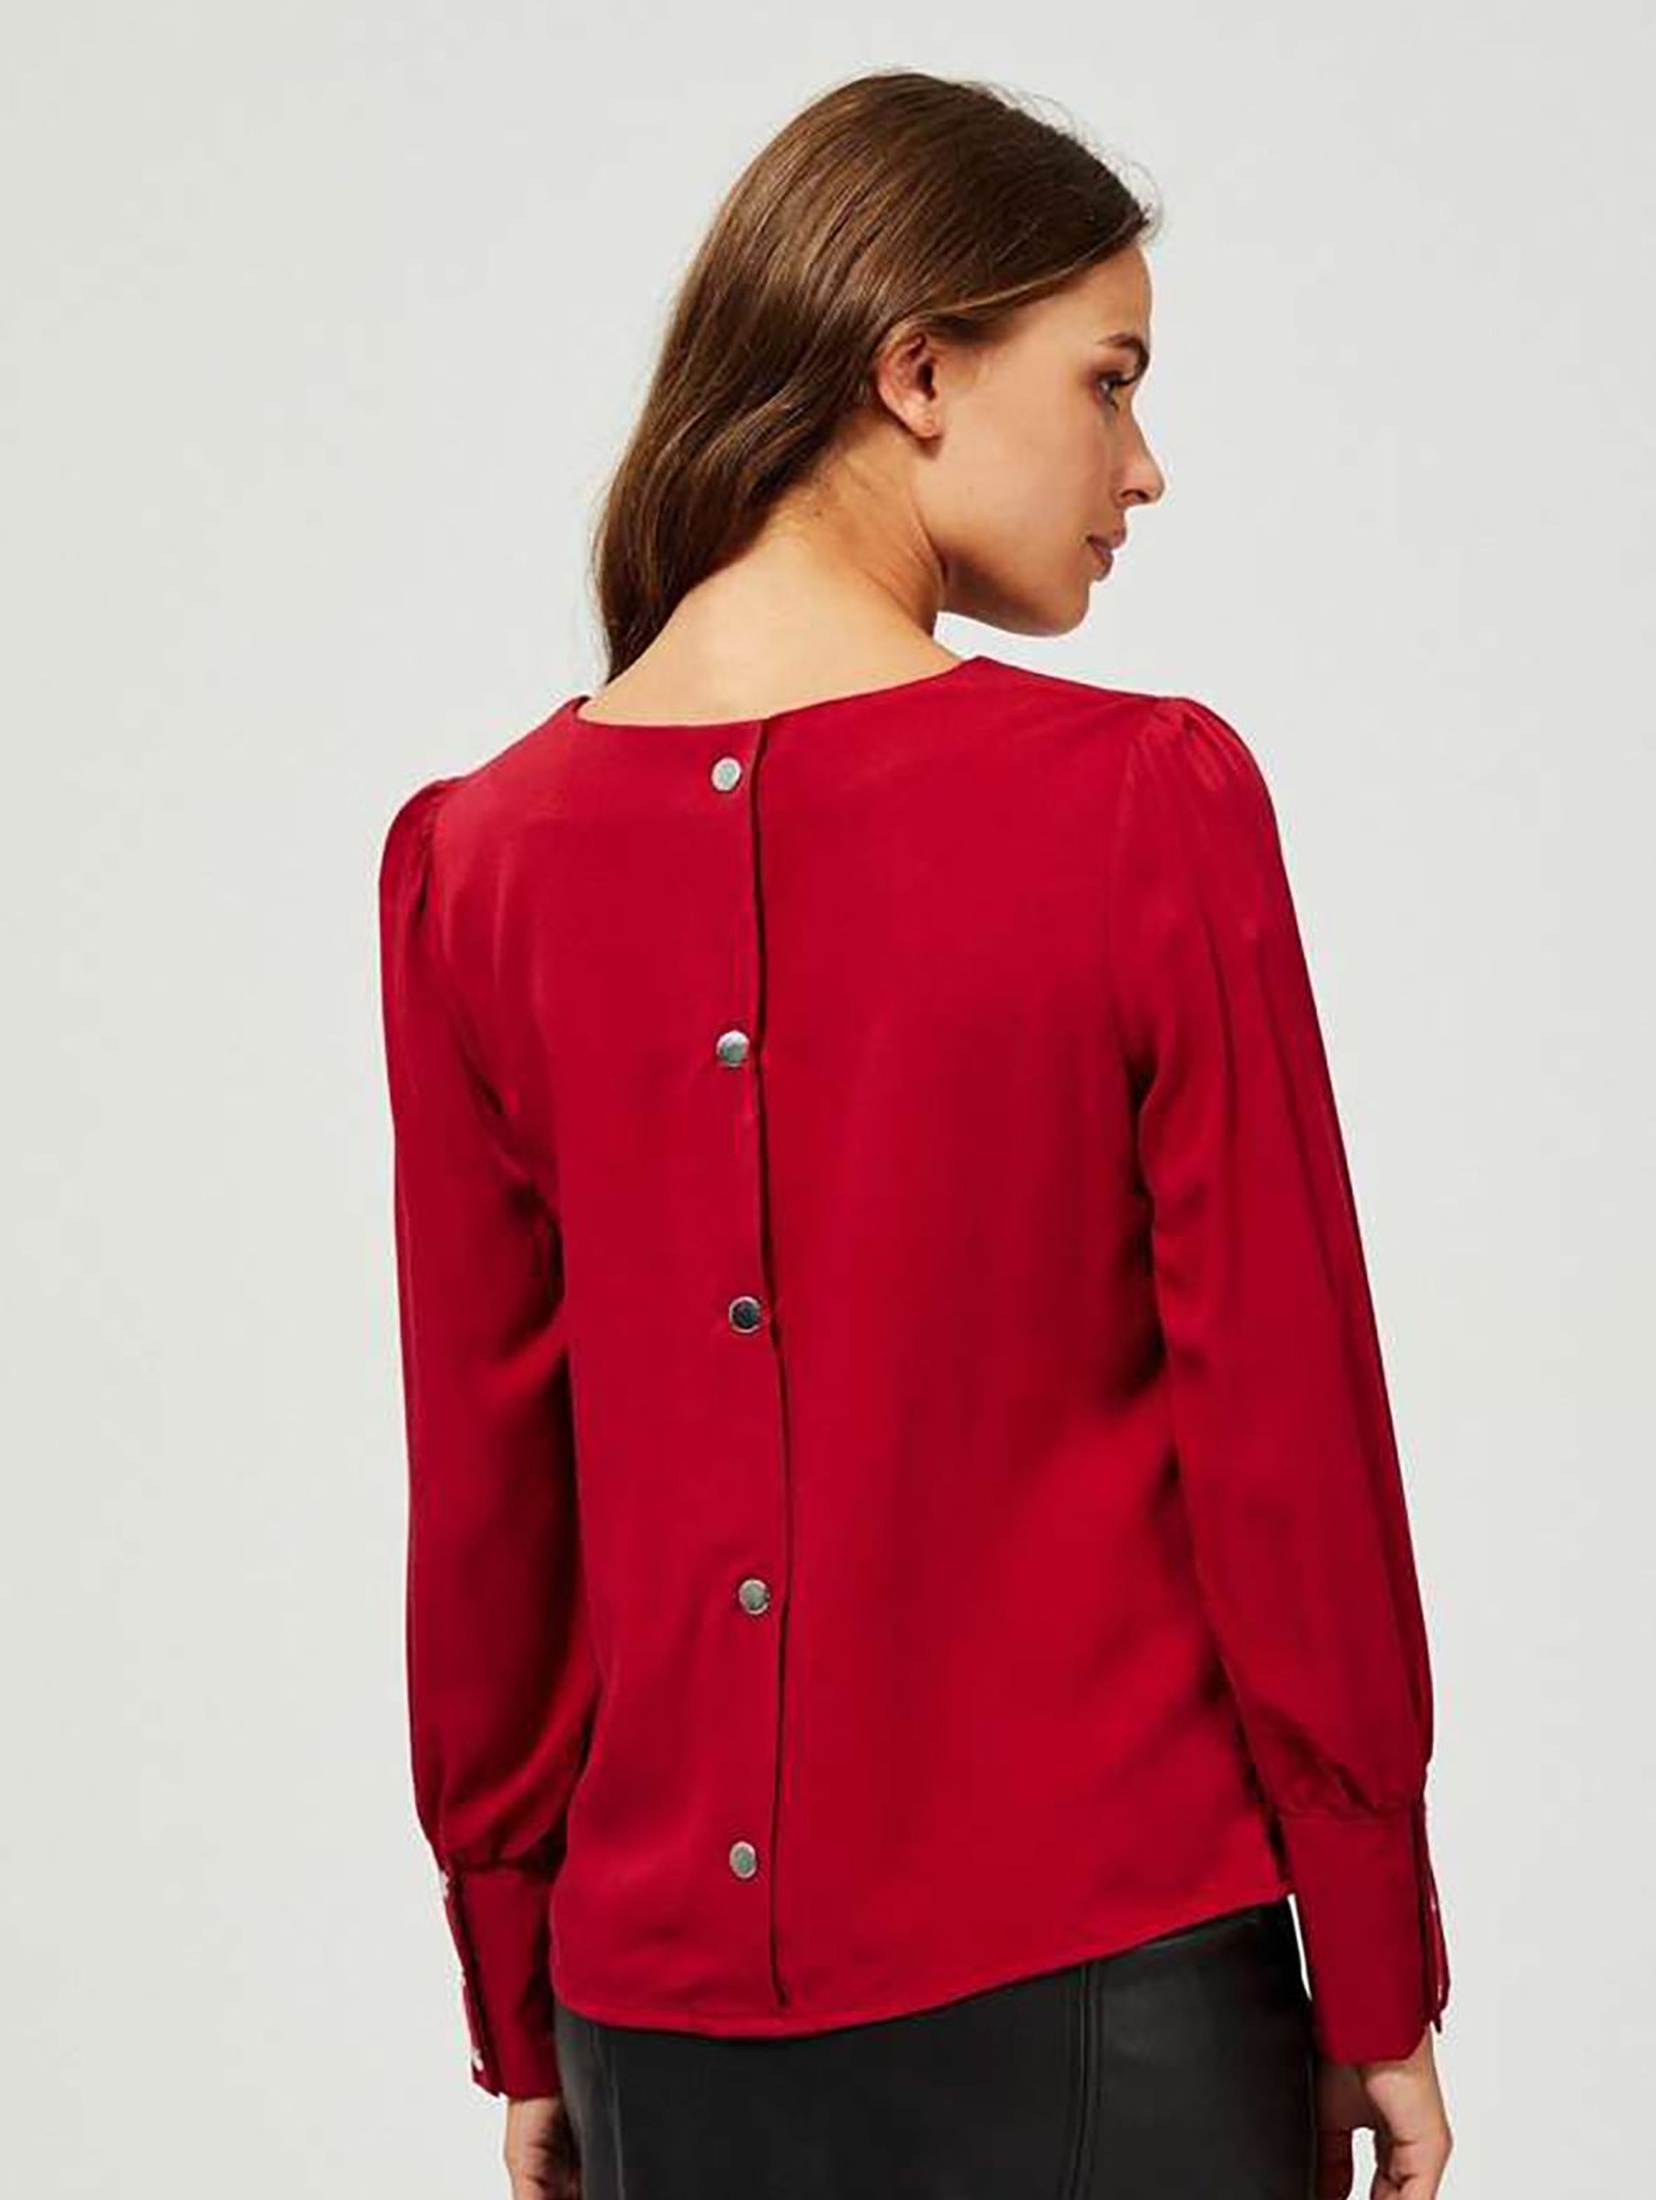 Bluzka damska czerwona z ozdobnymi mankietami